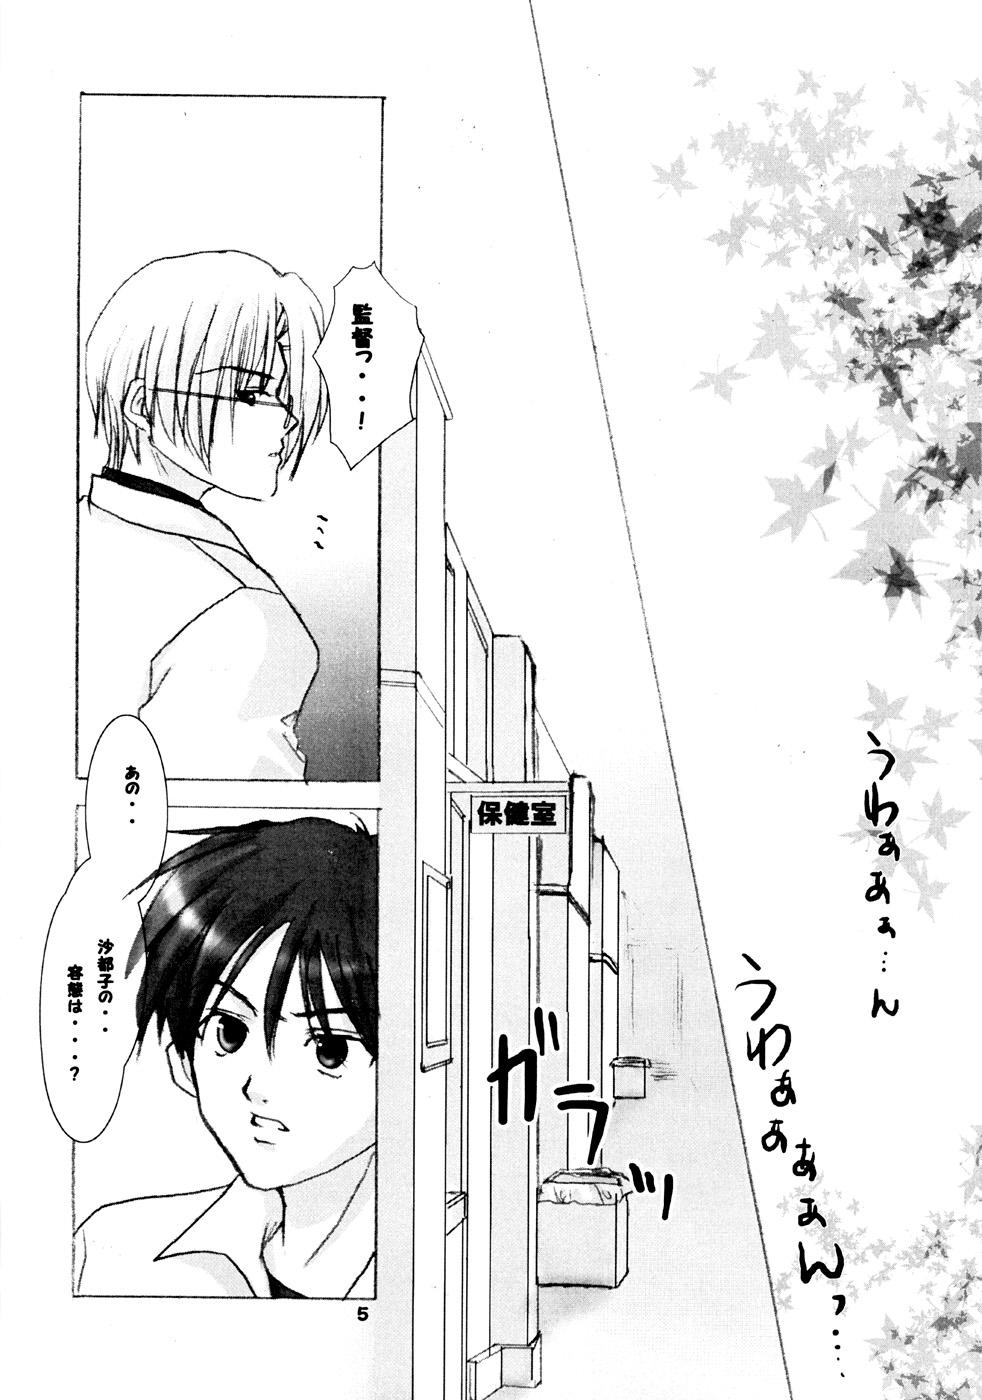 For TRIP? TRAP!! - Higurashi no naku koro ni Ecchi - Page 4